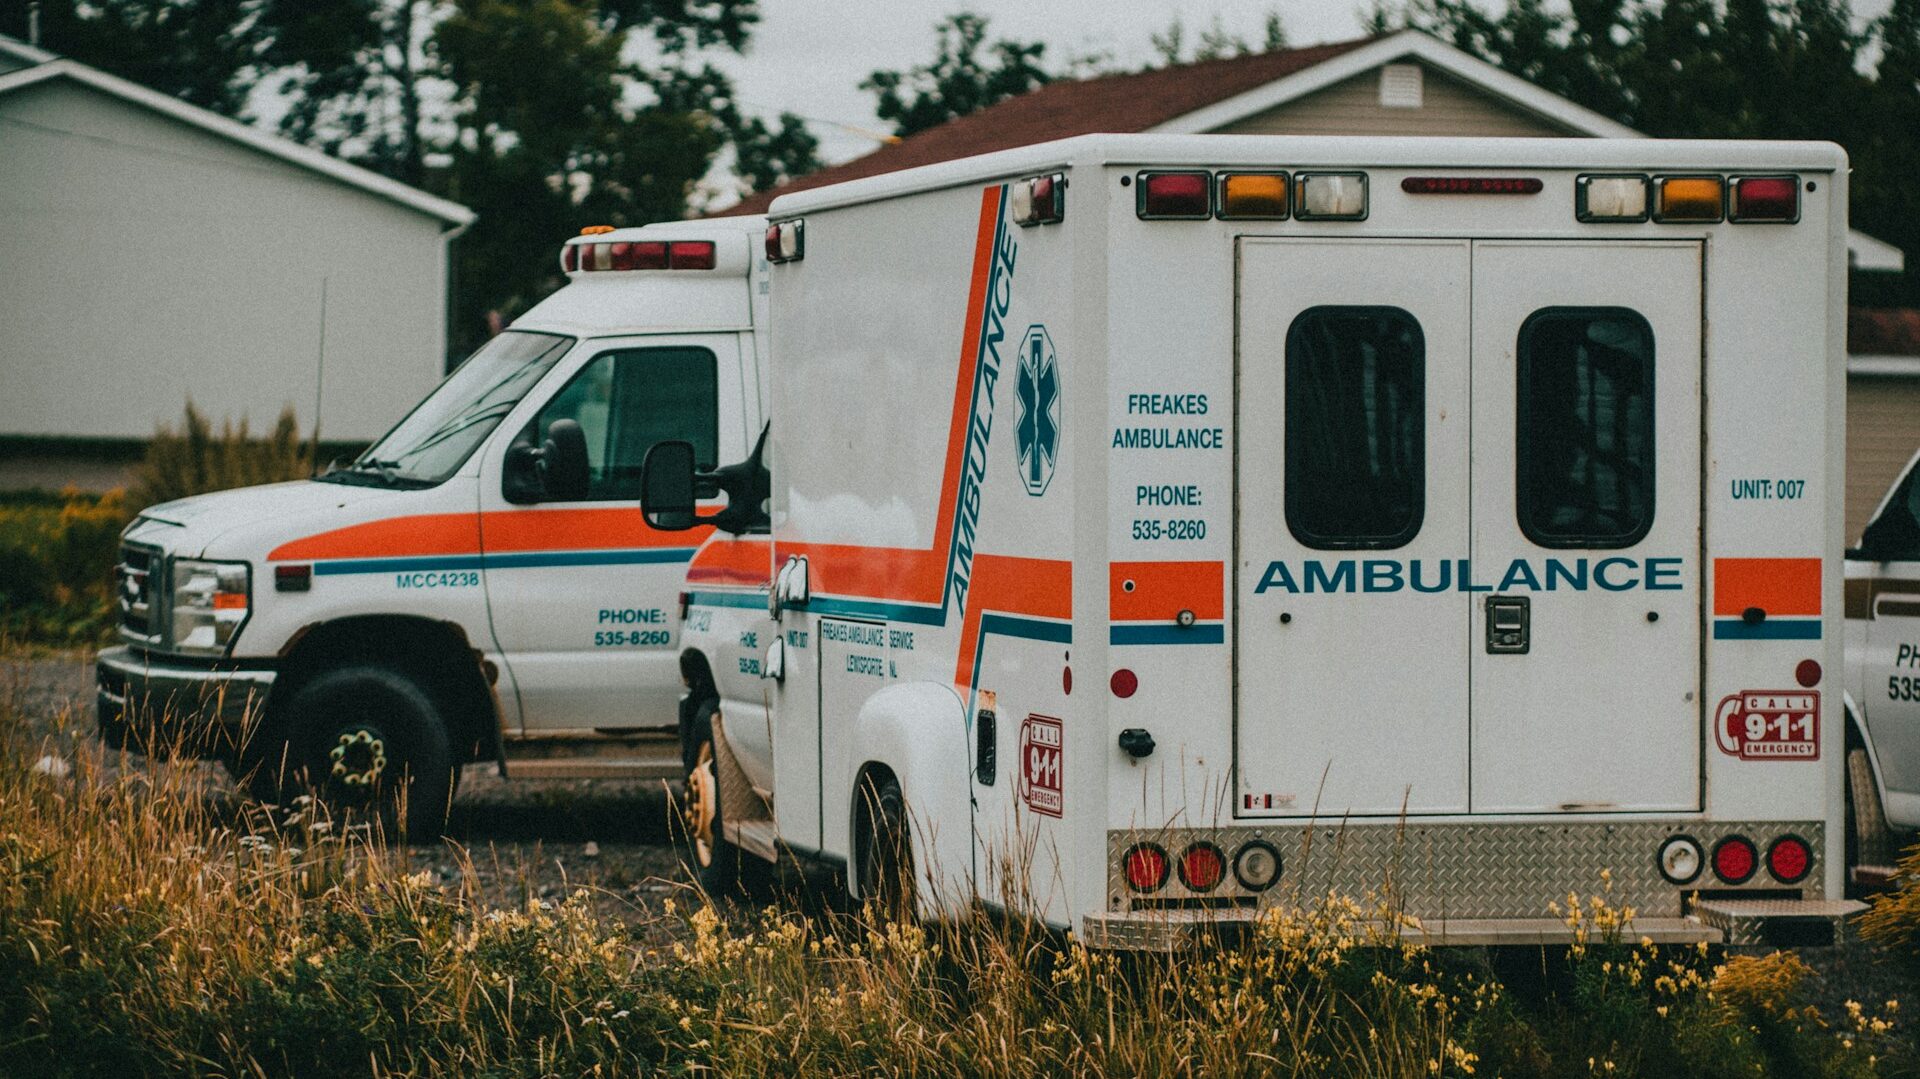 2台のアメリカの救急車を撮影した写真